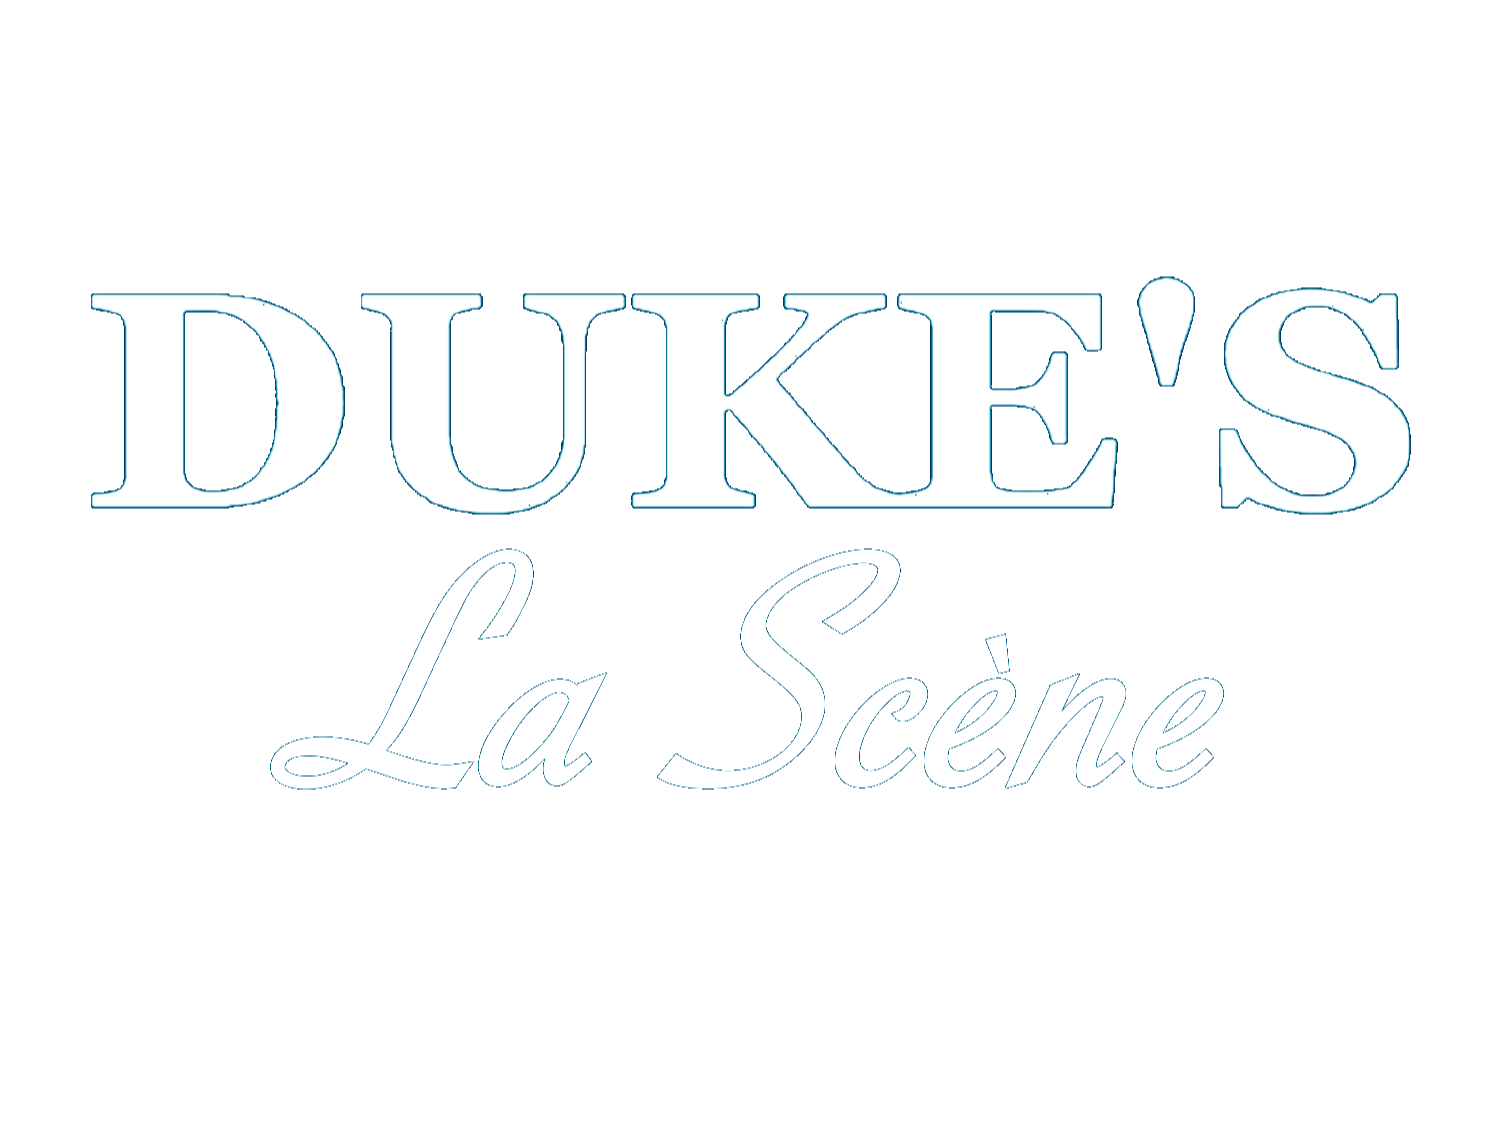 Dukes-LaScene-Blanc-transparent-modified